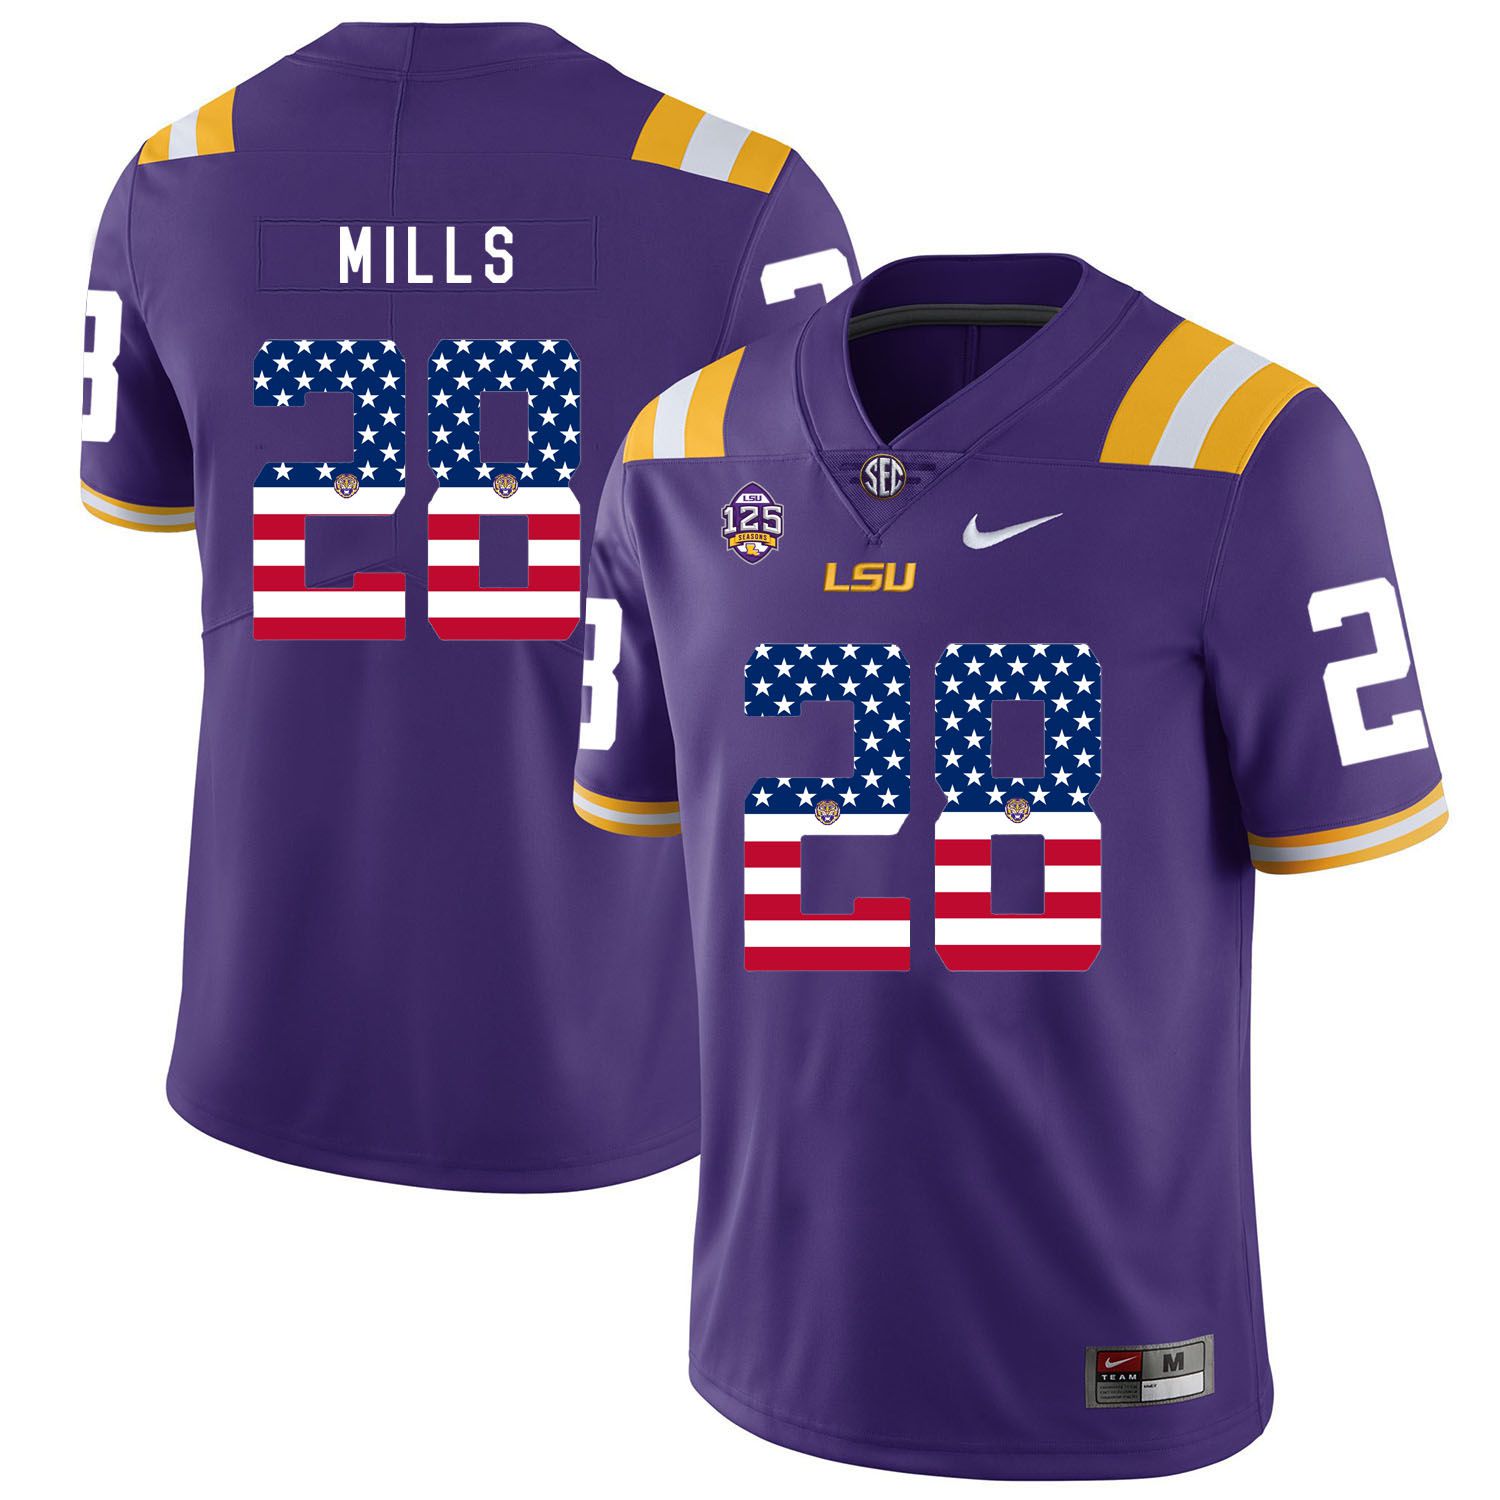 Men LSU Tigers #28 Mills Purple Flag Customized NCAA Jerseys->customized ncaa jersey->Custom Jersey